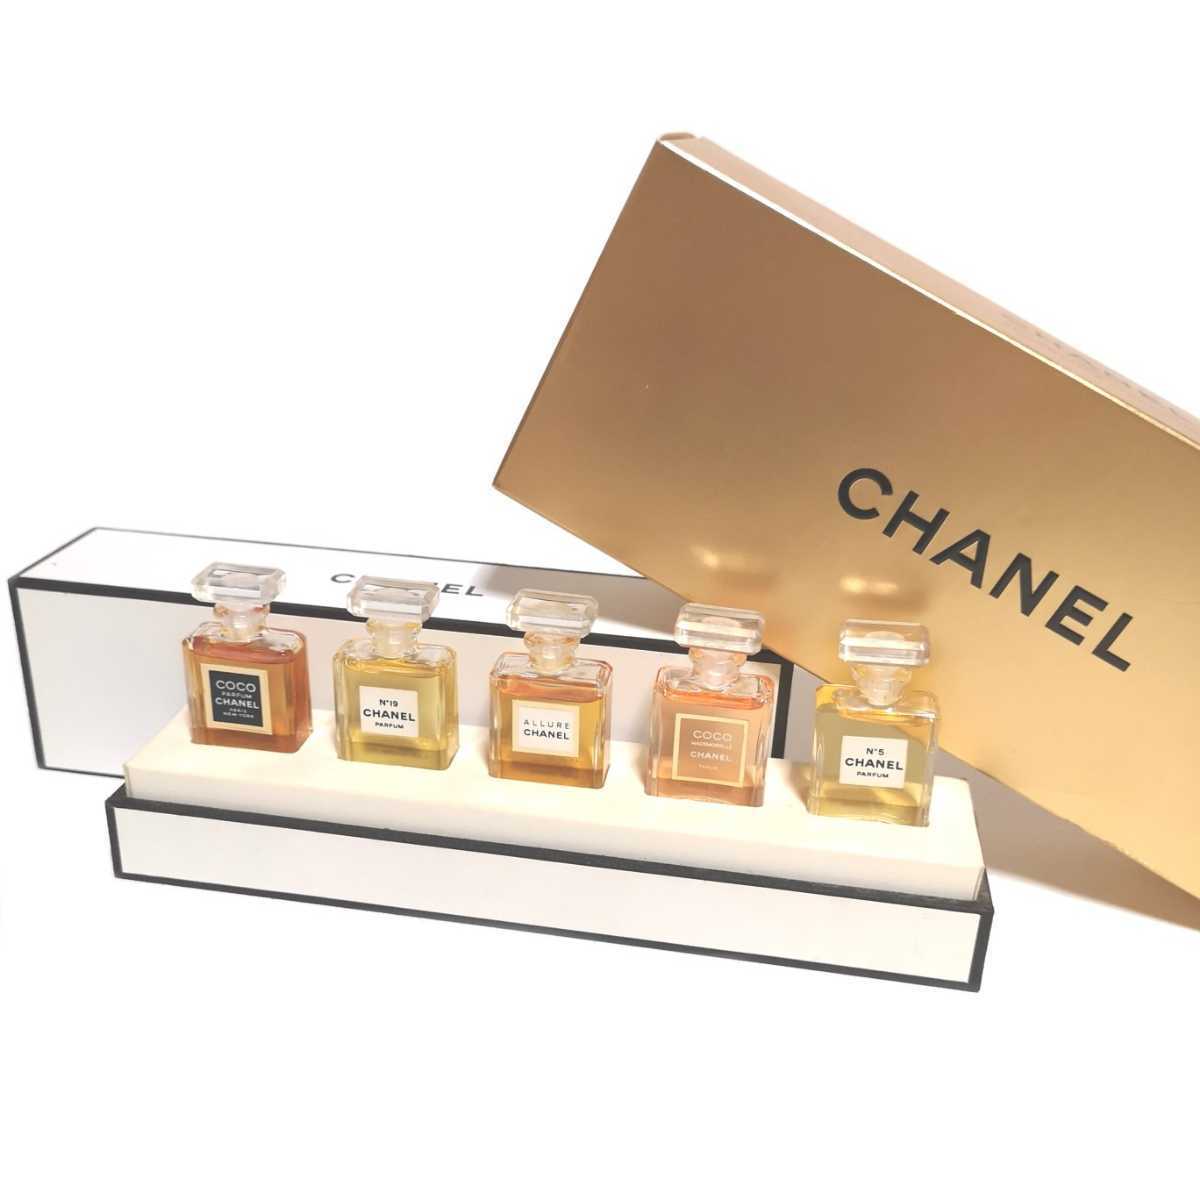 即決 Chanel シャネル フレグランス ワードローブ パルファム 各3 5ml 香水 No 5 No 19 ココシャネル ココマドモアゼル アリュール Product Details Yahoo Auctions Japan Proxy Bidding And Shopping Service From Japan